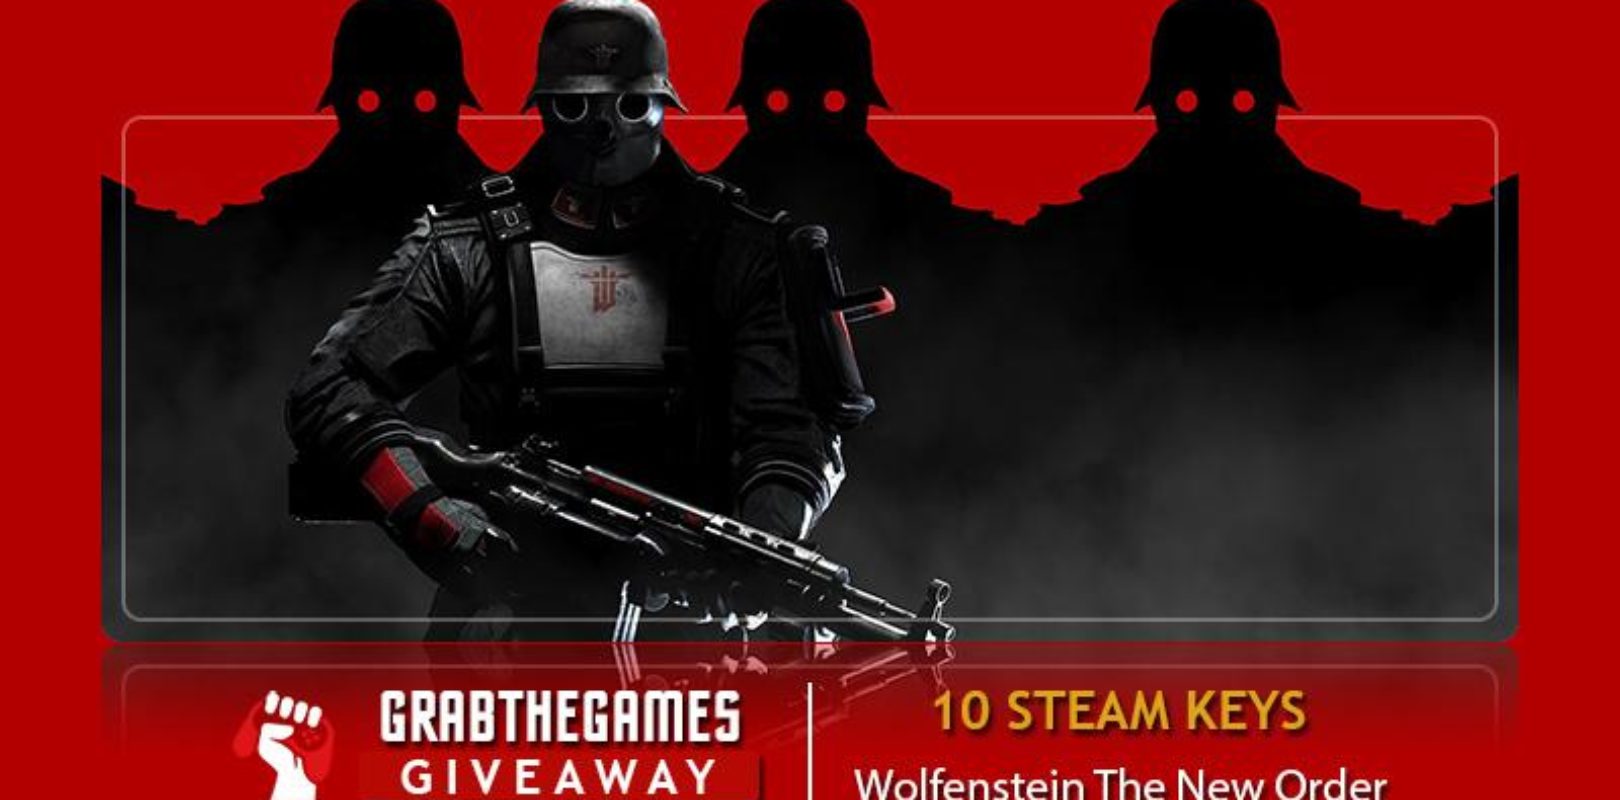 Free Wolfenstein The New Order Steam Keys Ended Pivotal Gamers - roblox wolfenstein